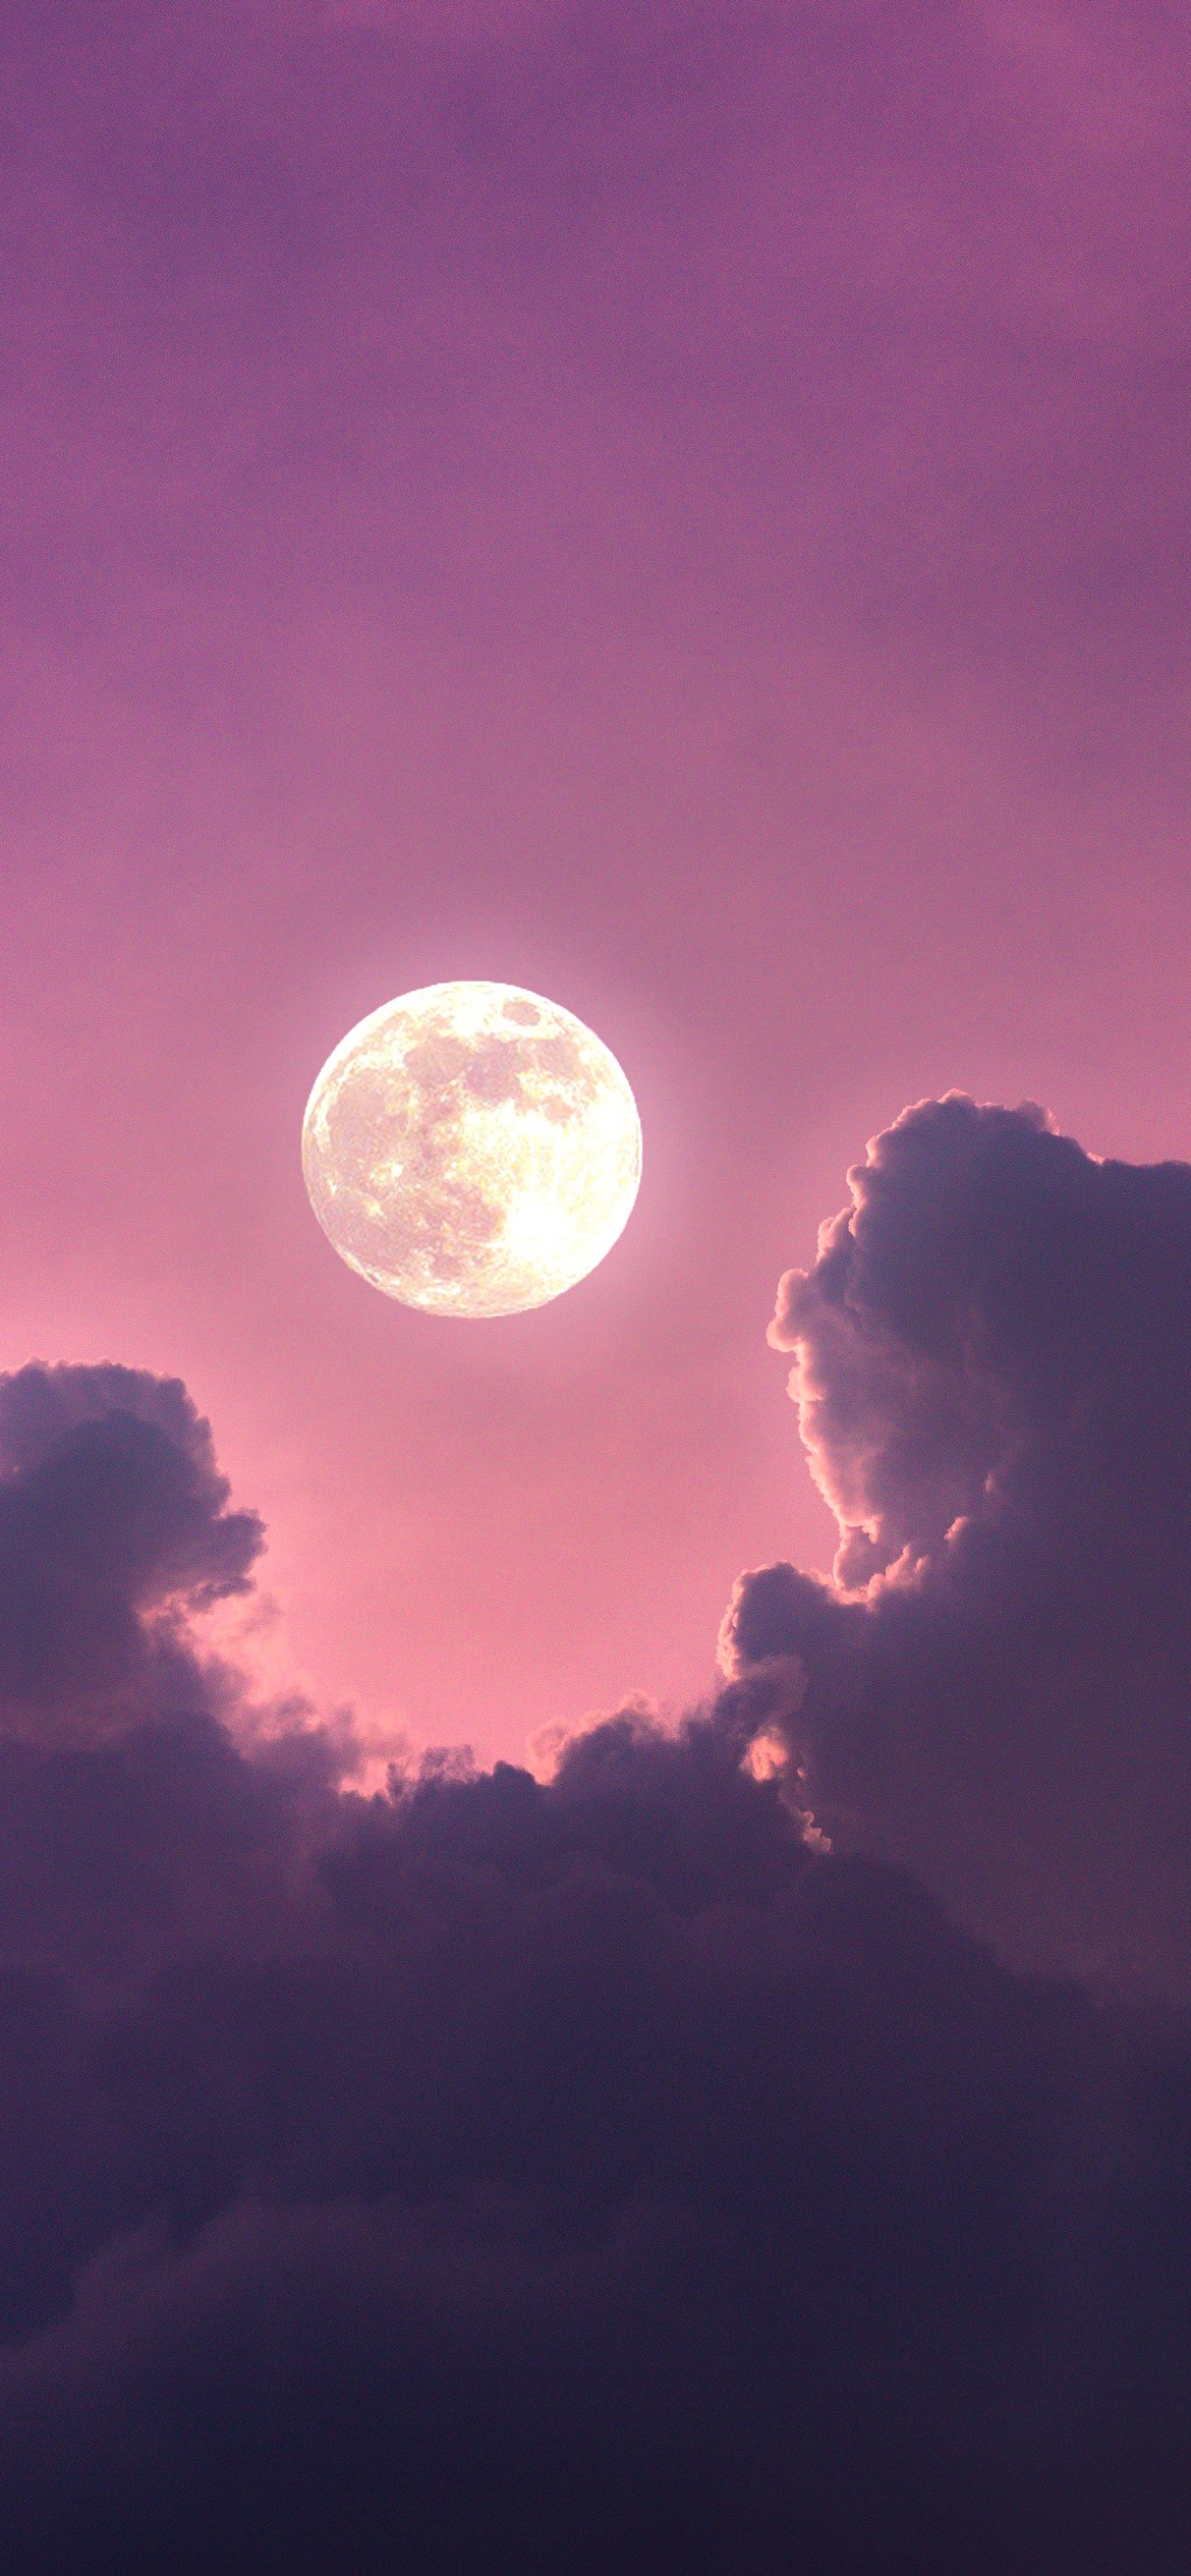 Mời bạn đến với một thế giới đầy màu sắc và ấn tượng với nền đầy trăng 4K, mây, bầu trời hồng và thiên nhiên tuyệt vời! Click ngay để cùng khám phá hình ảnh #1653 đầy thú vị.